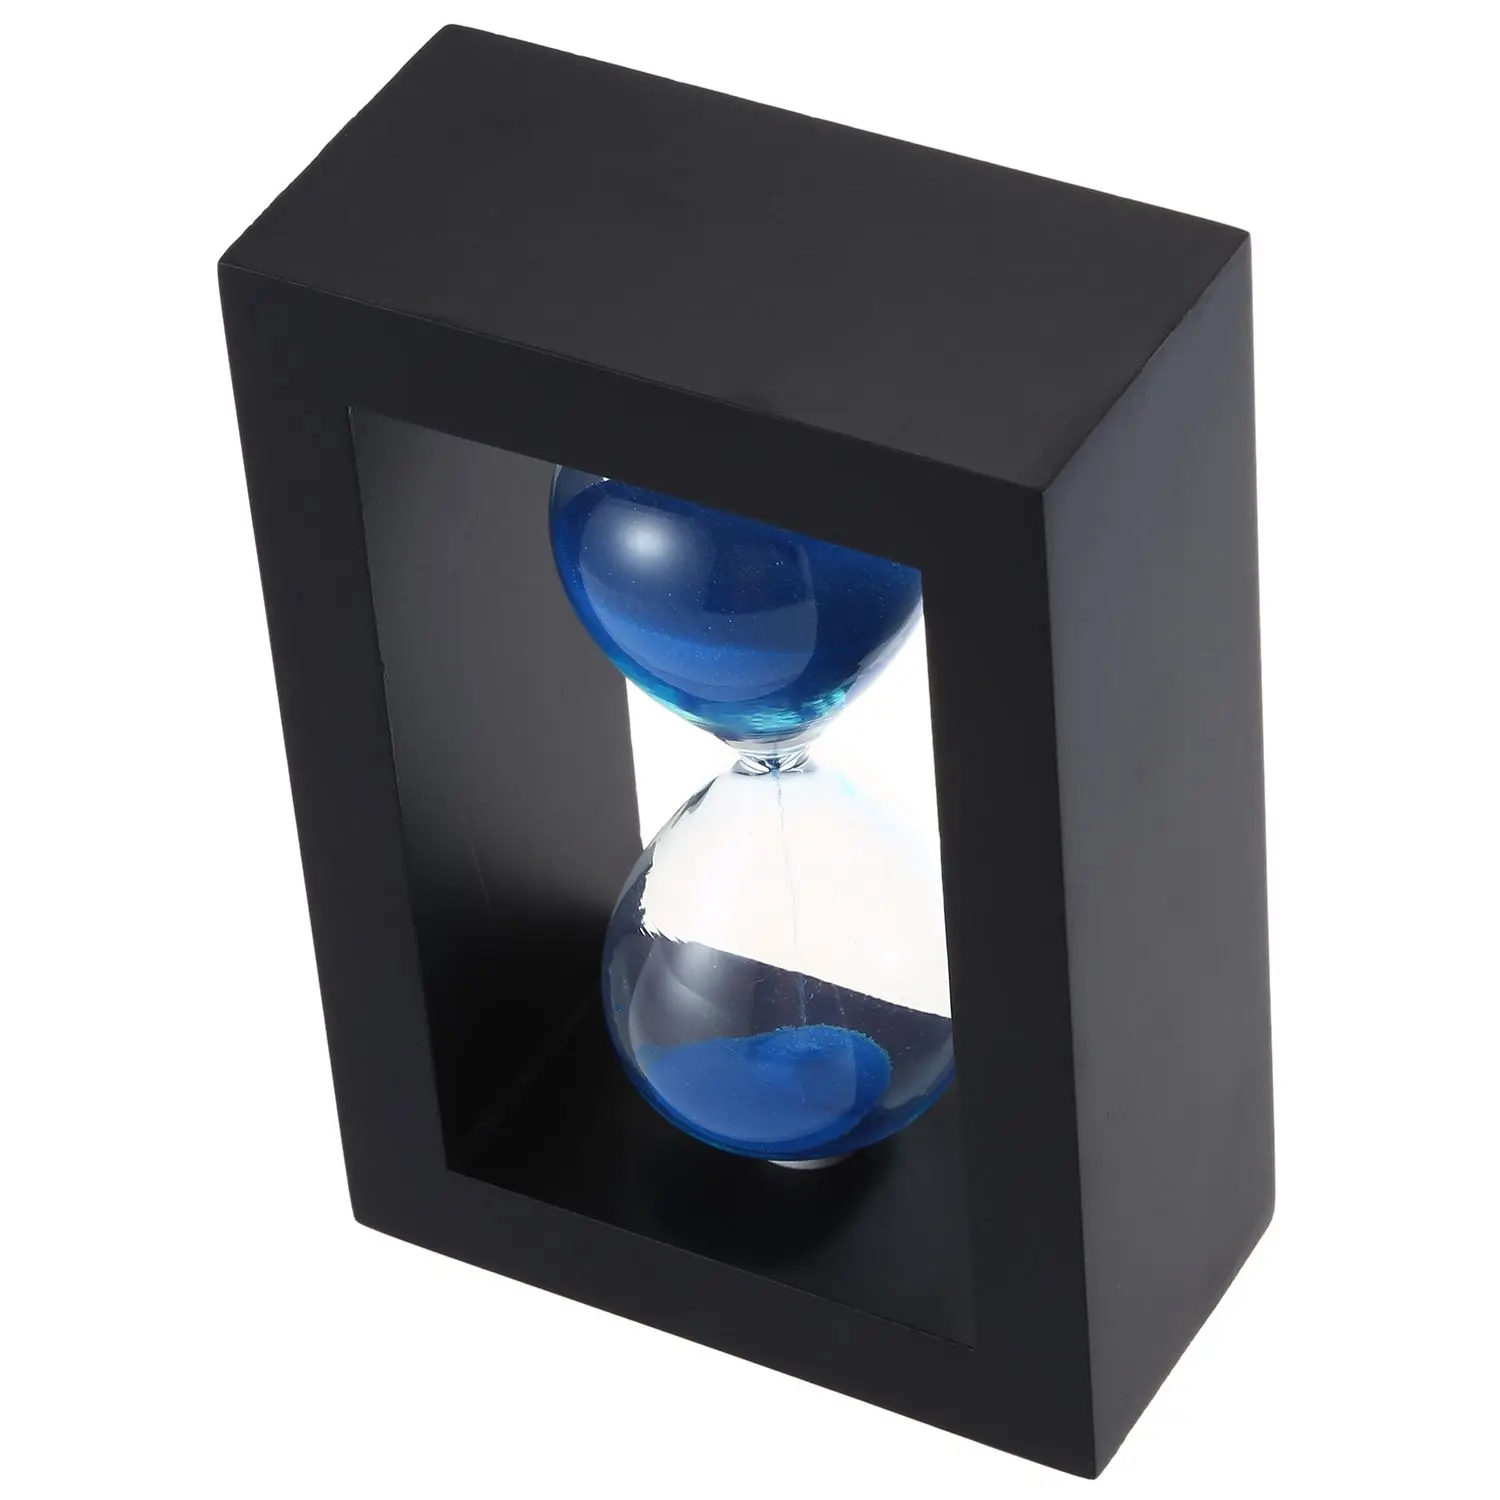 JEYL деревянные рамки стеклянные песочные часы черная рамка Синий Песок.(Черная оправа синего цвета